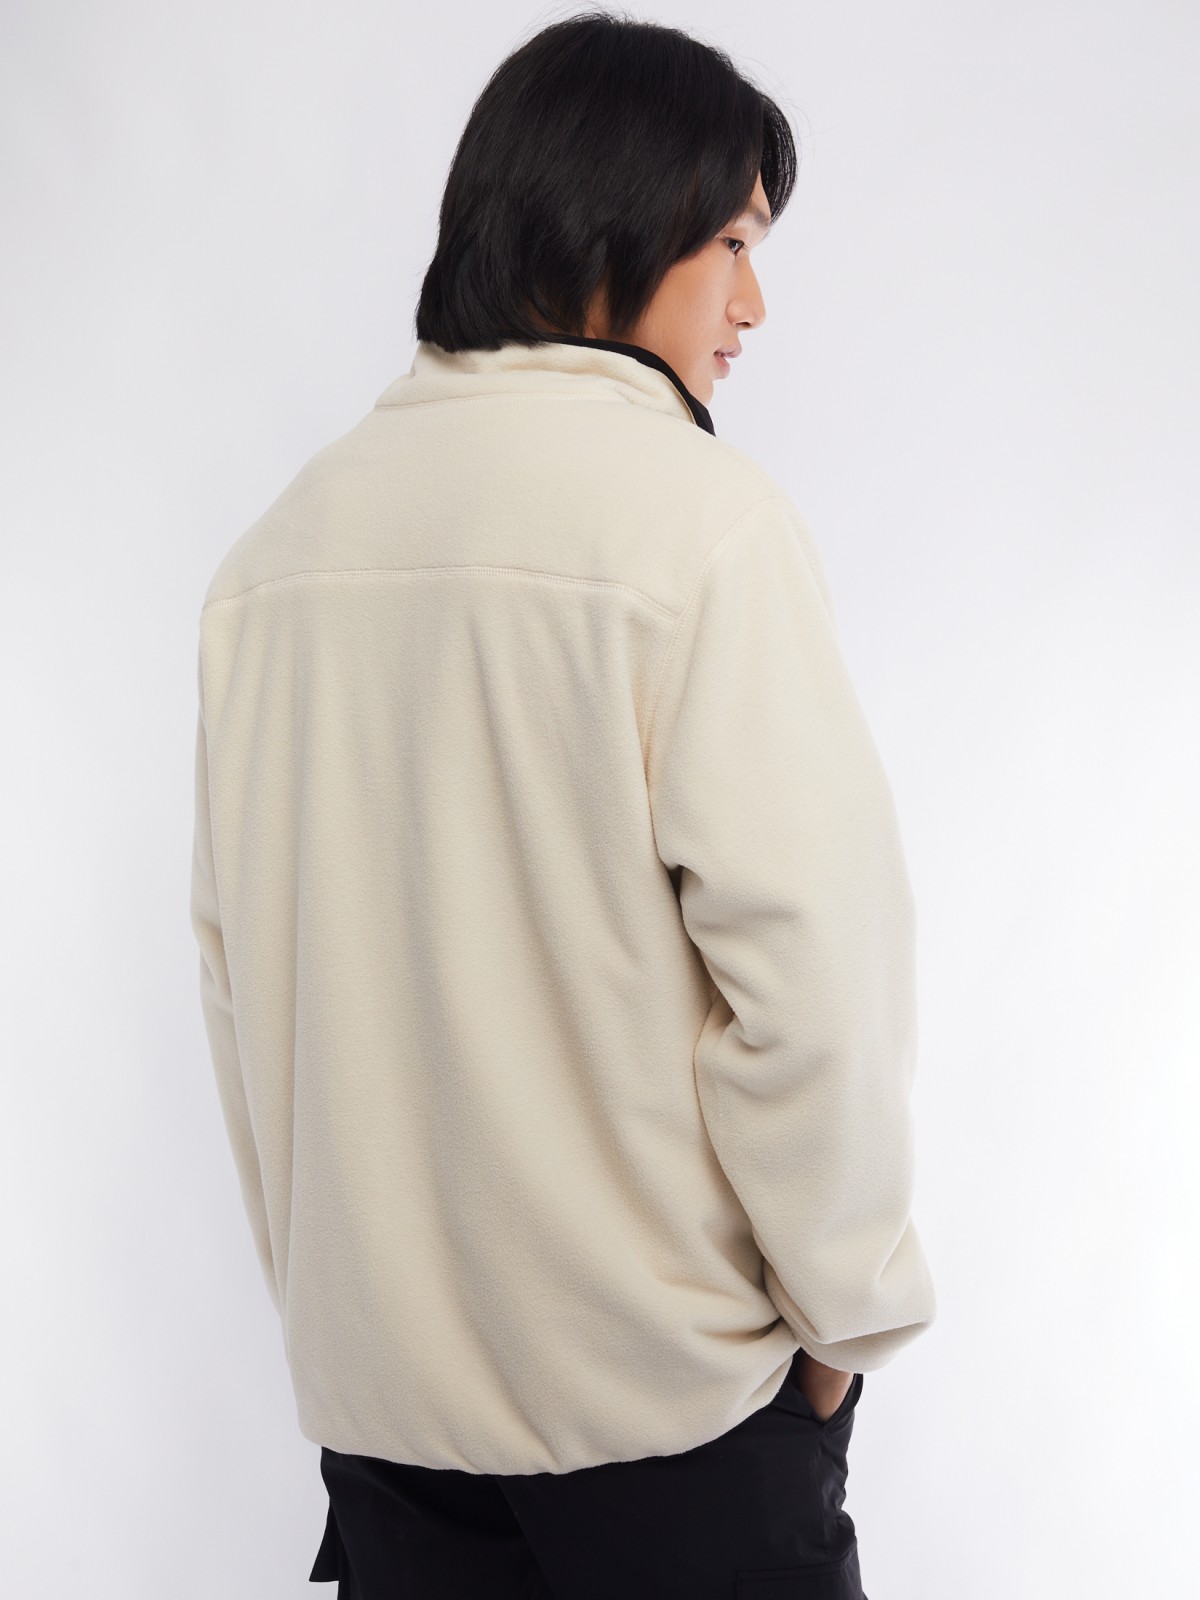 Лёгкая куртка-ветровка с воротником-стойкой zolla 01413560L044, цвет черный, размер M - фото 5